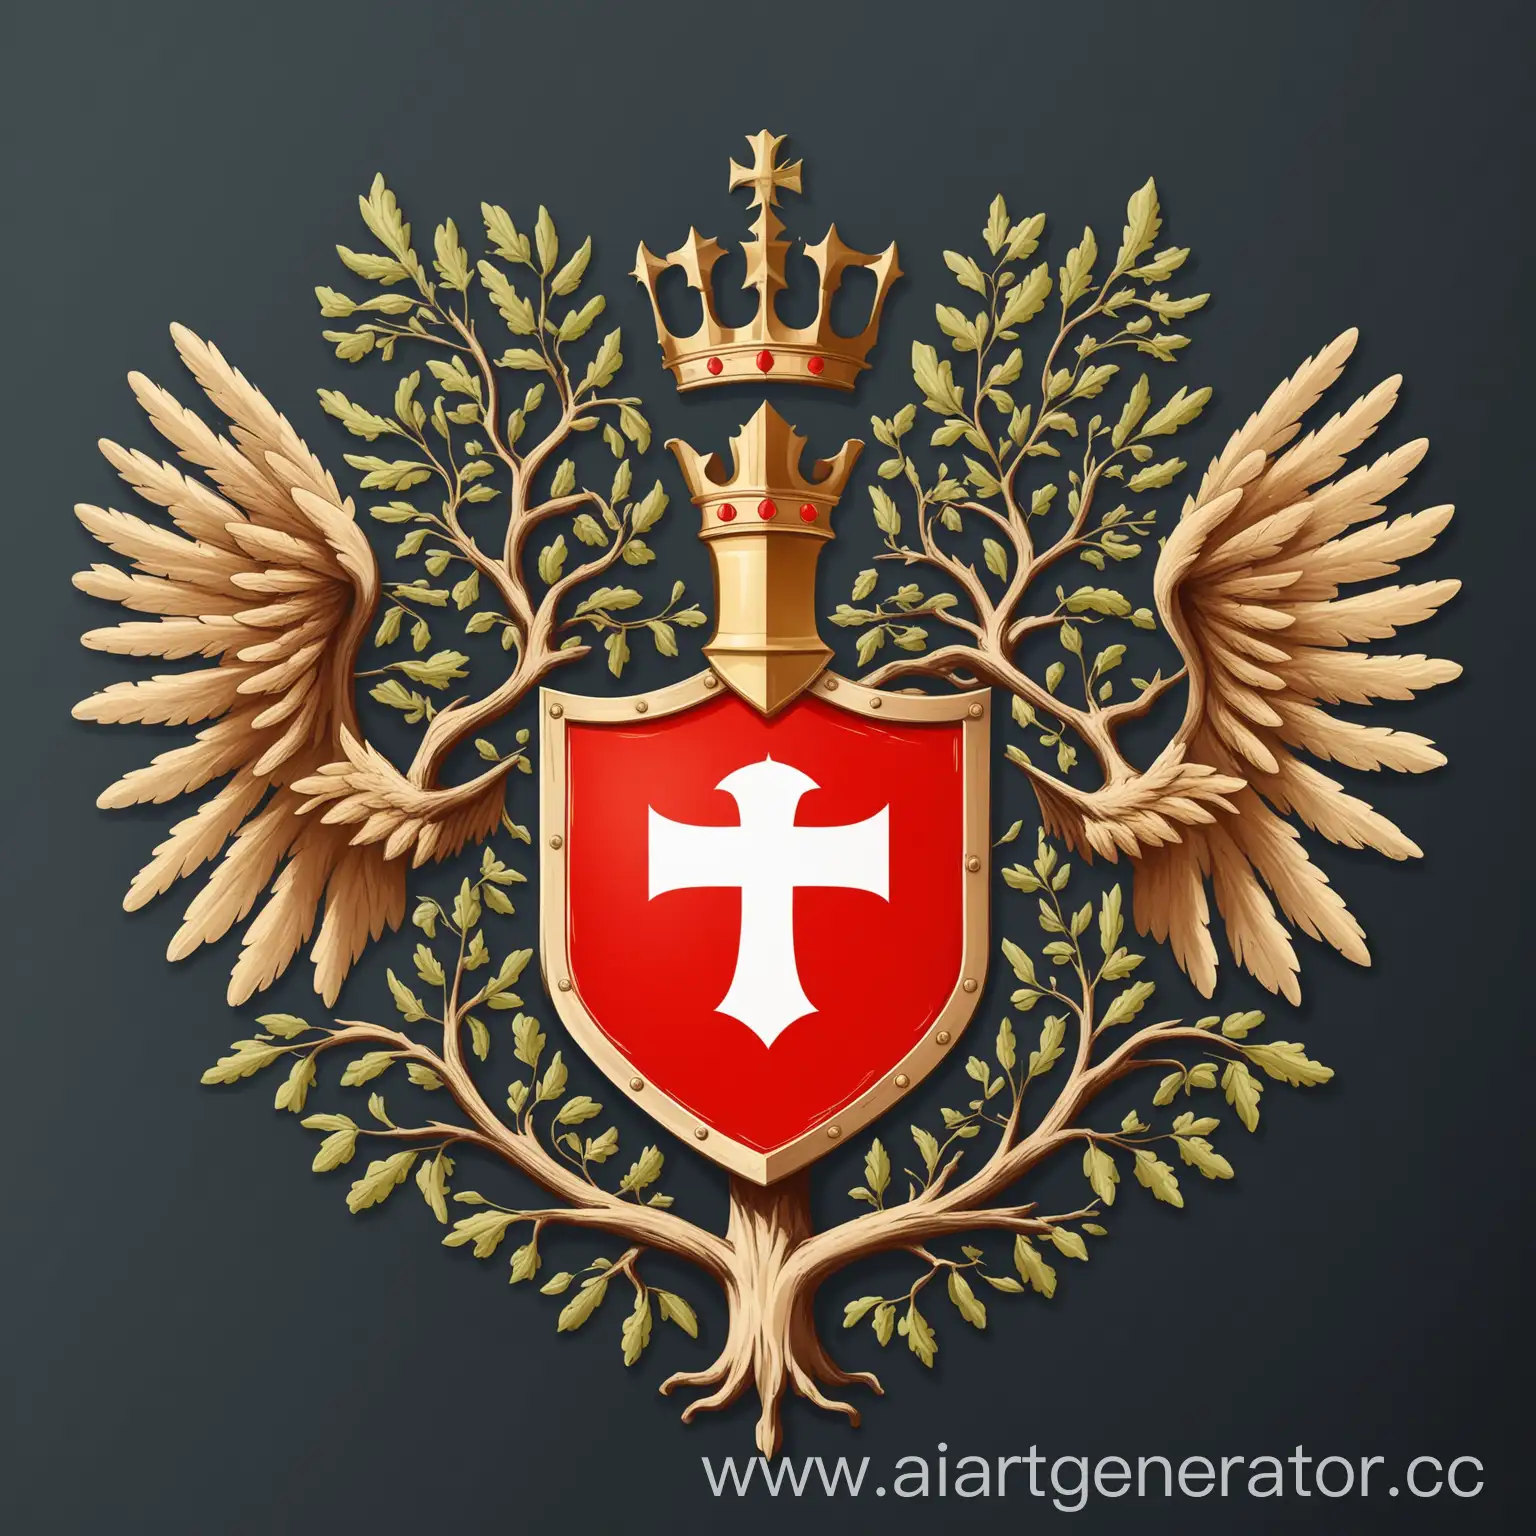 Герб на щите форы швейцарской геральдики,  по центру щита  дерево , по углам 
щита крылья, Стиль: минимализм